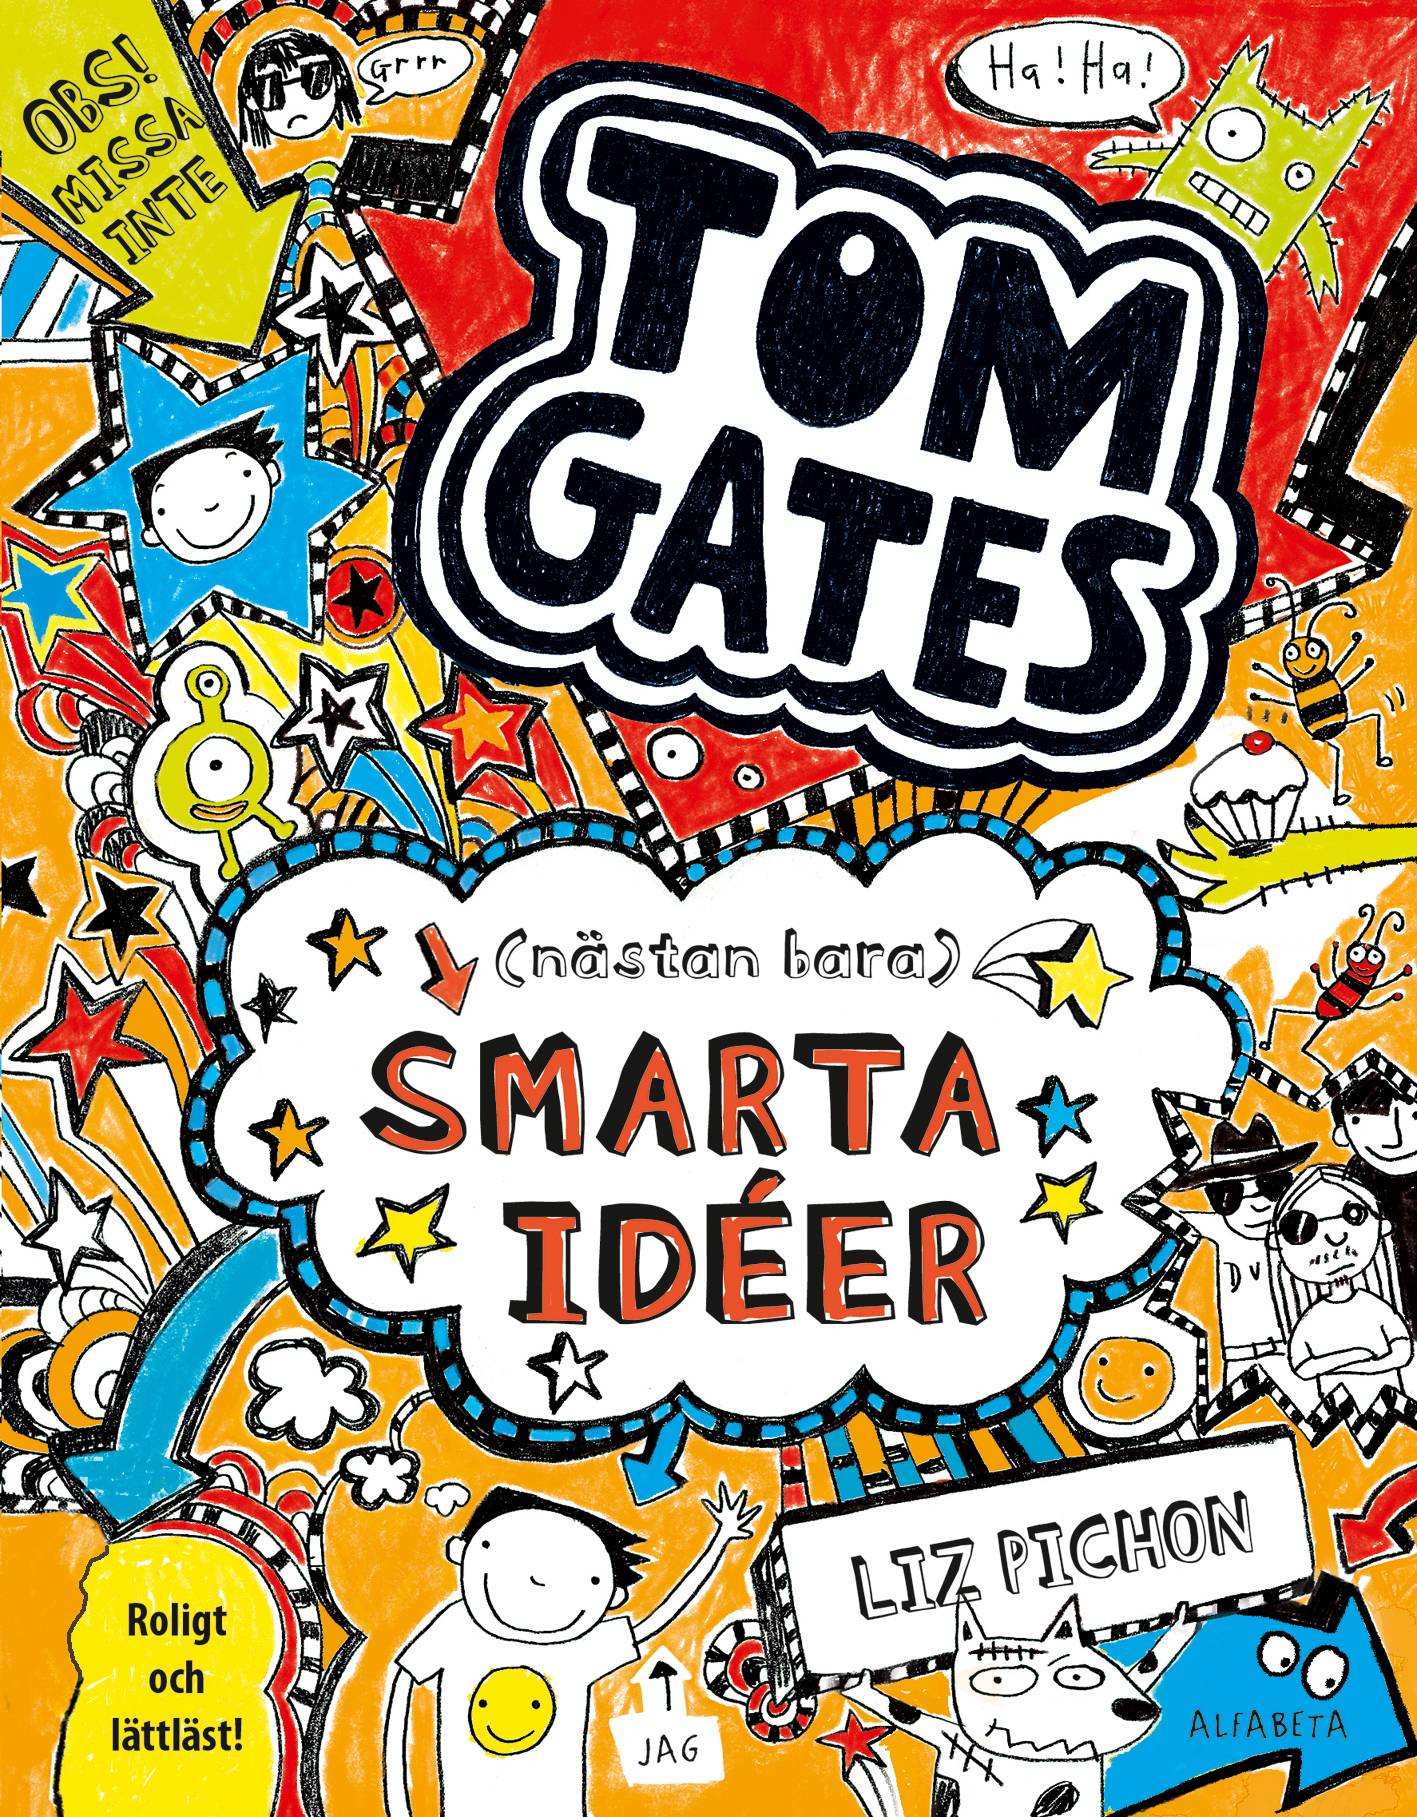 Tom Gates (nästan bara) smarta idéer